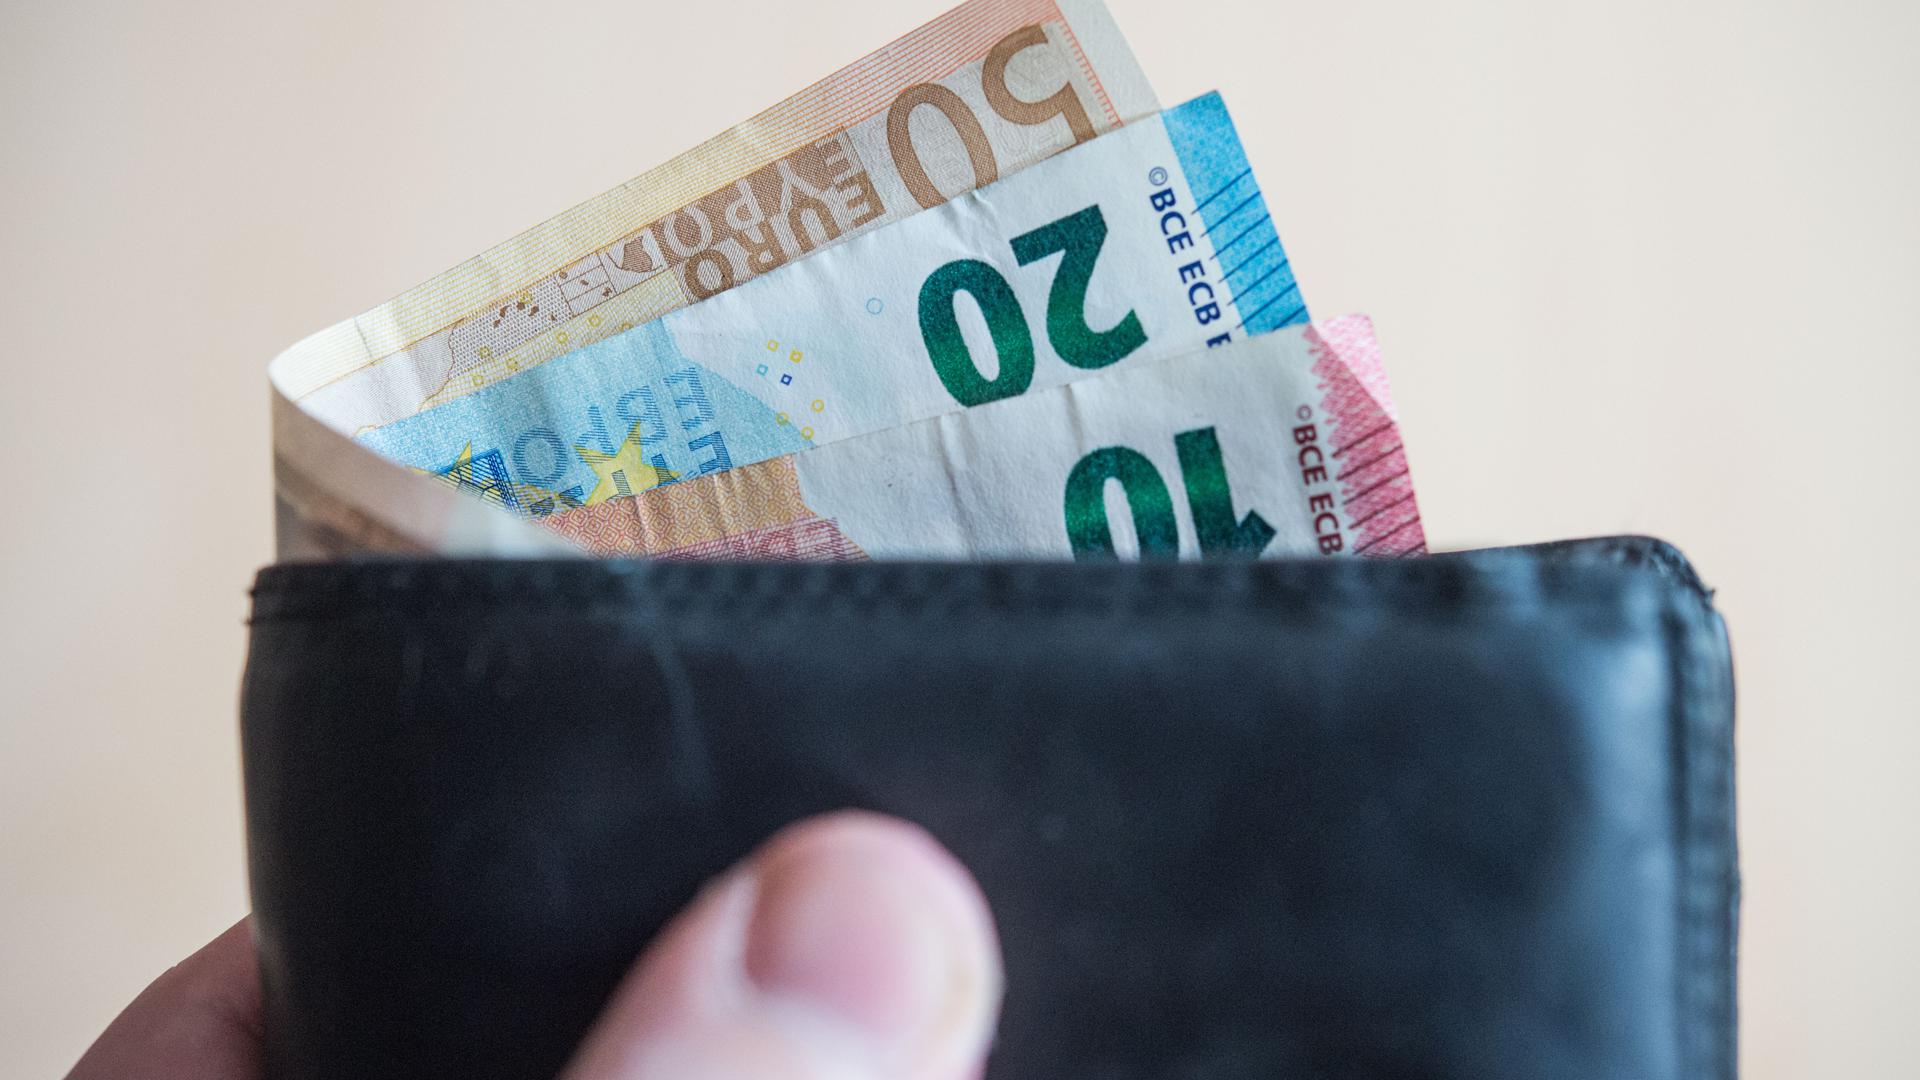 Geldscheine im Wert von zehn, zwanzig, und fünfzig Euro stecken in einem Geldbeutel, der von einer Hand gehalten wird. 